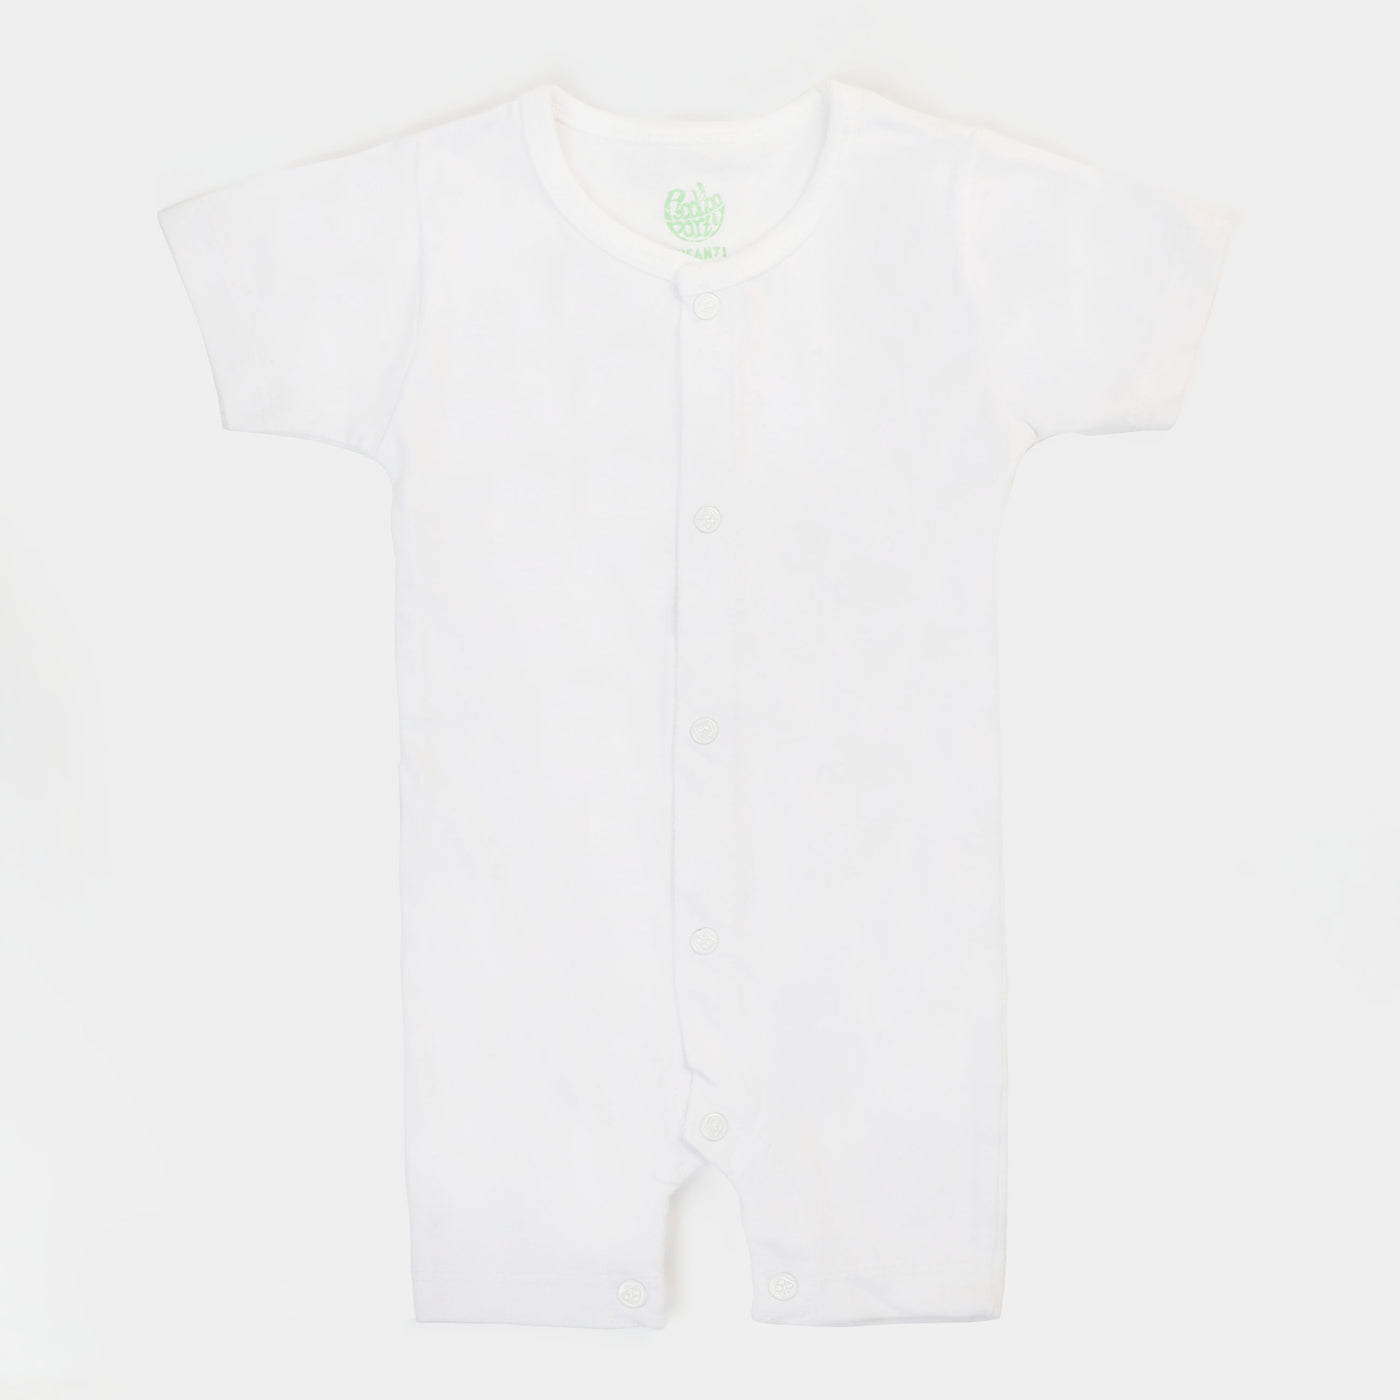 Infant Unisex Cotton Rompers 3Pcs - White